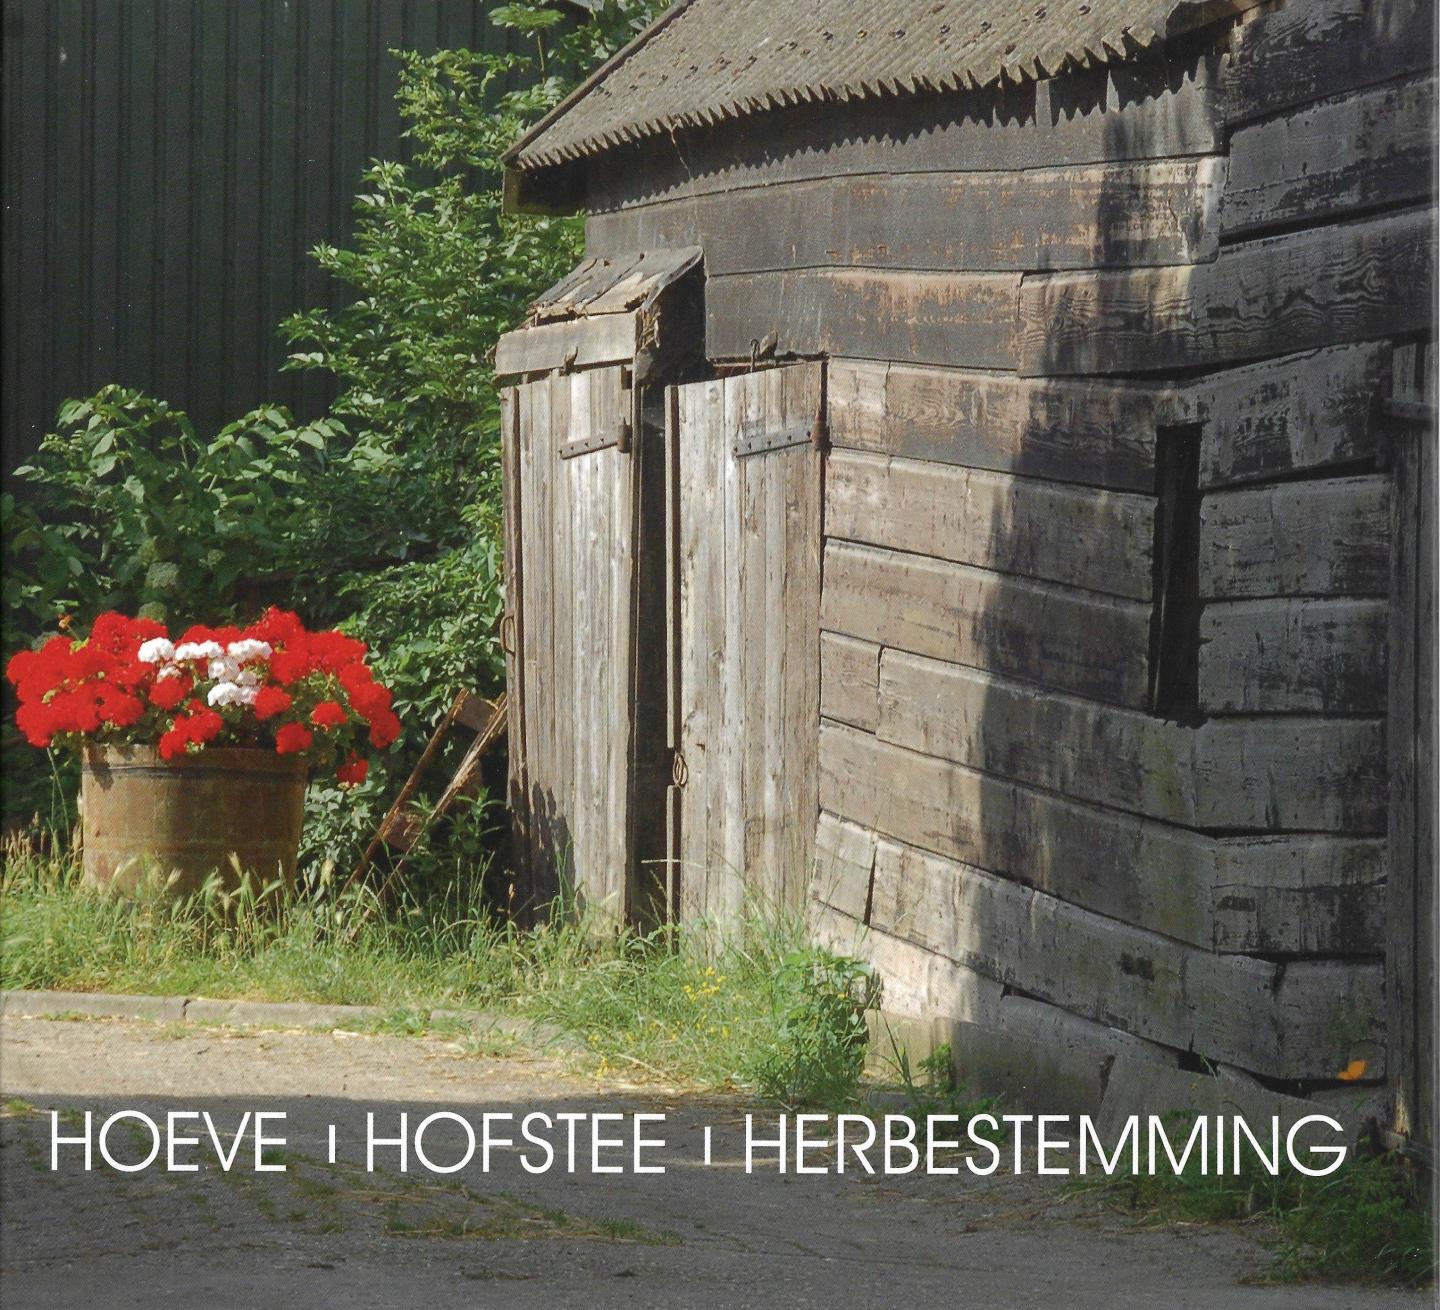  - XXX Hoeve - Hofstee - Herbetsemming